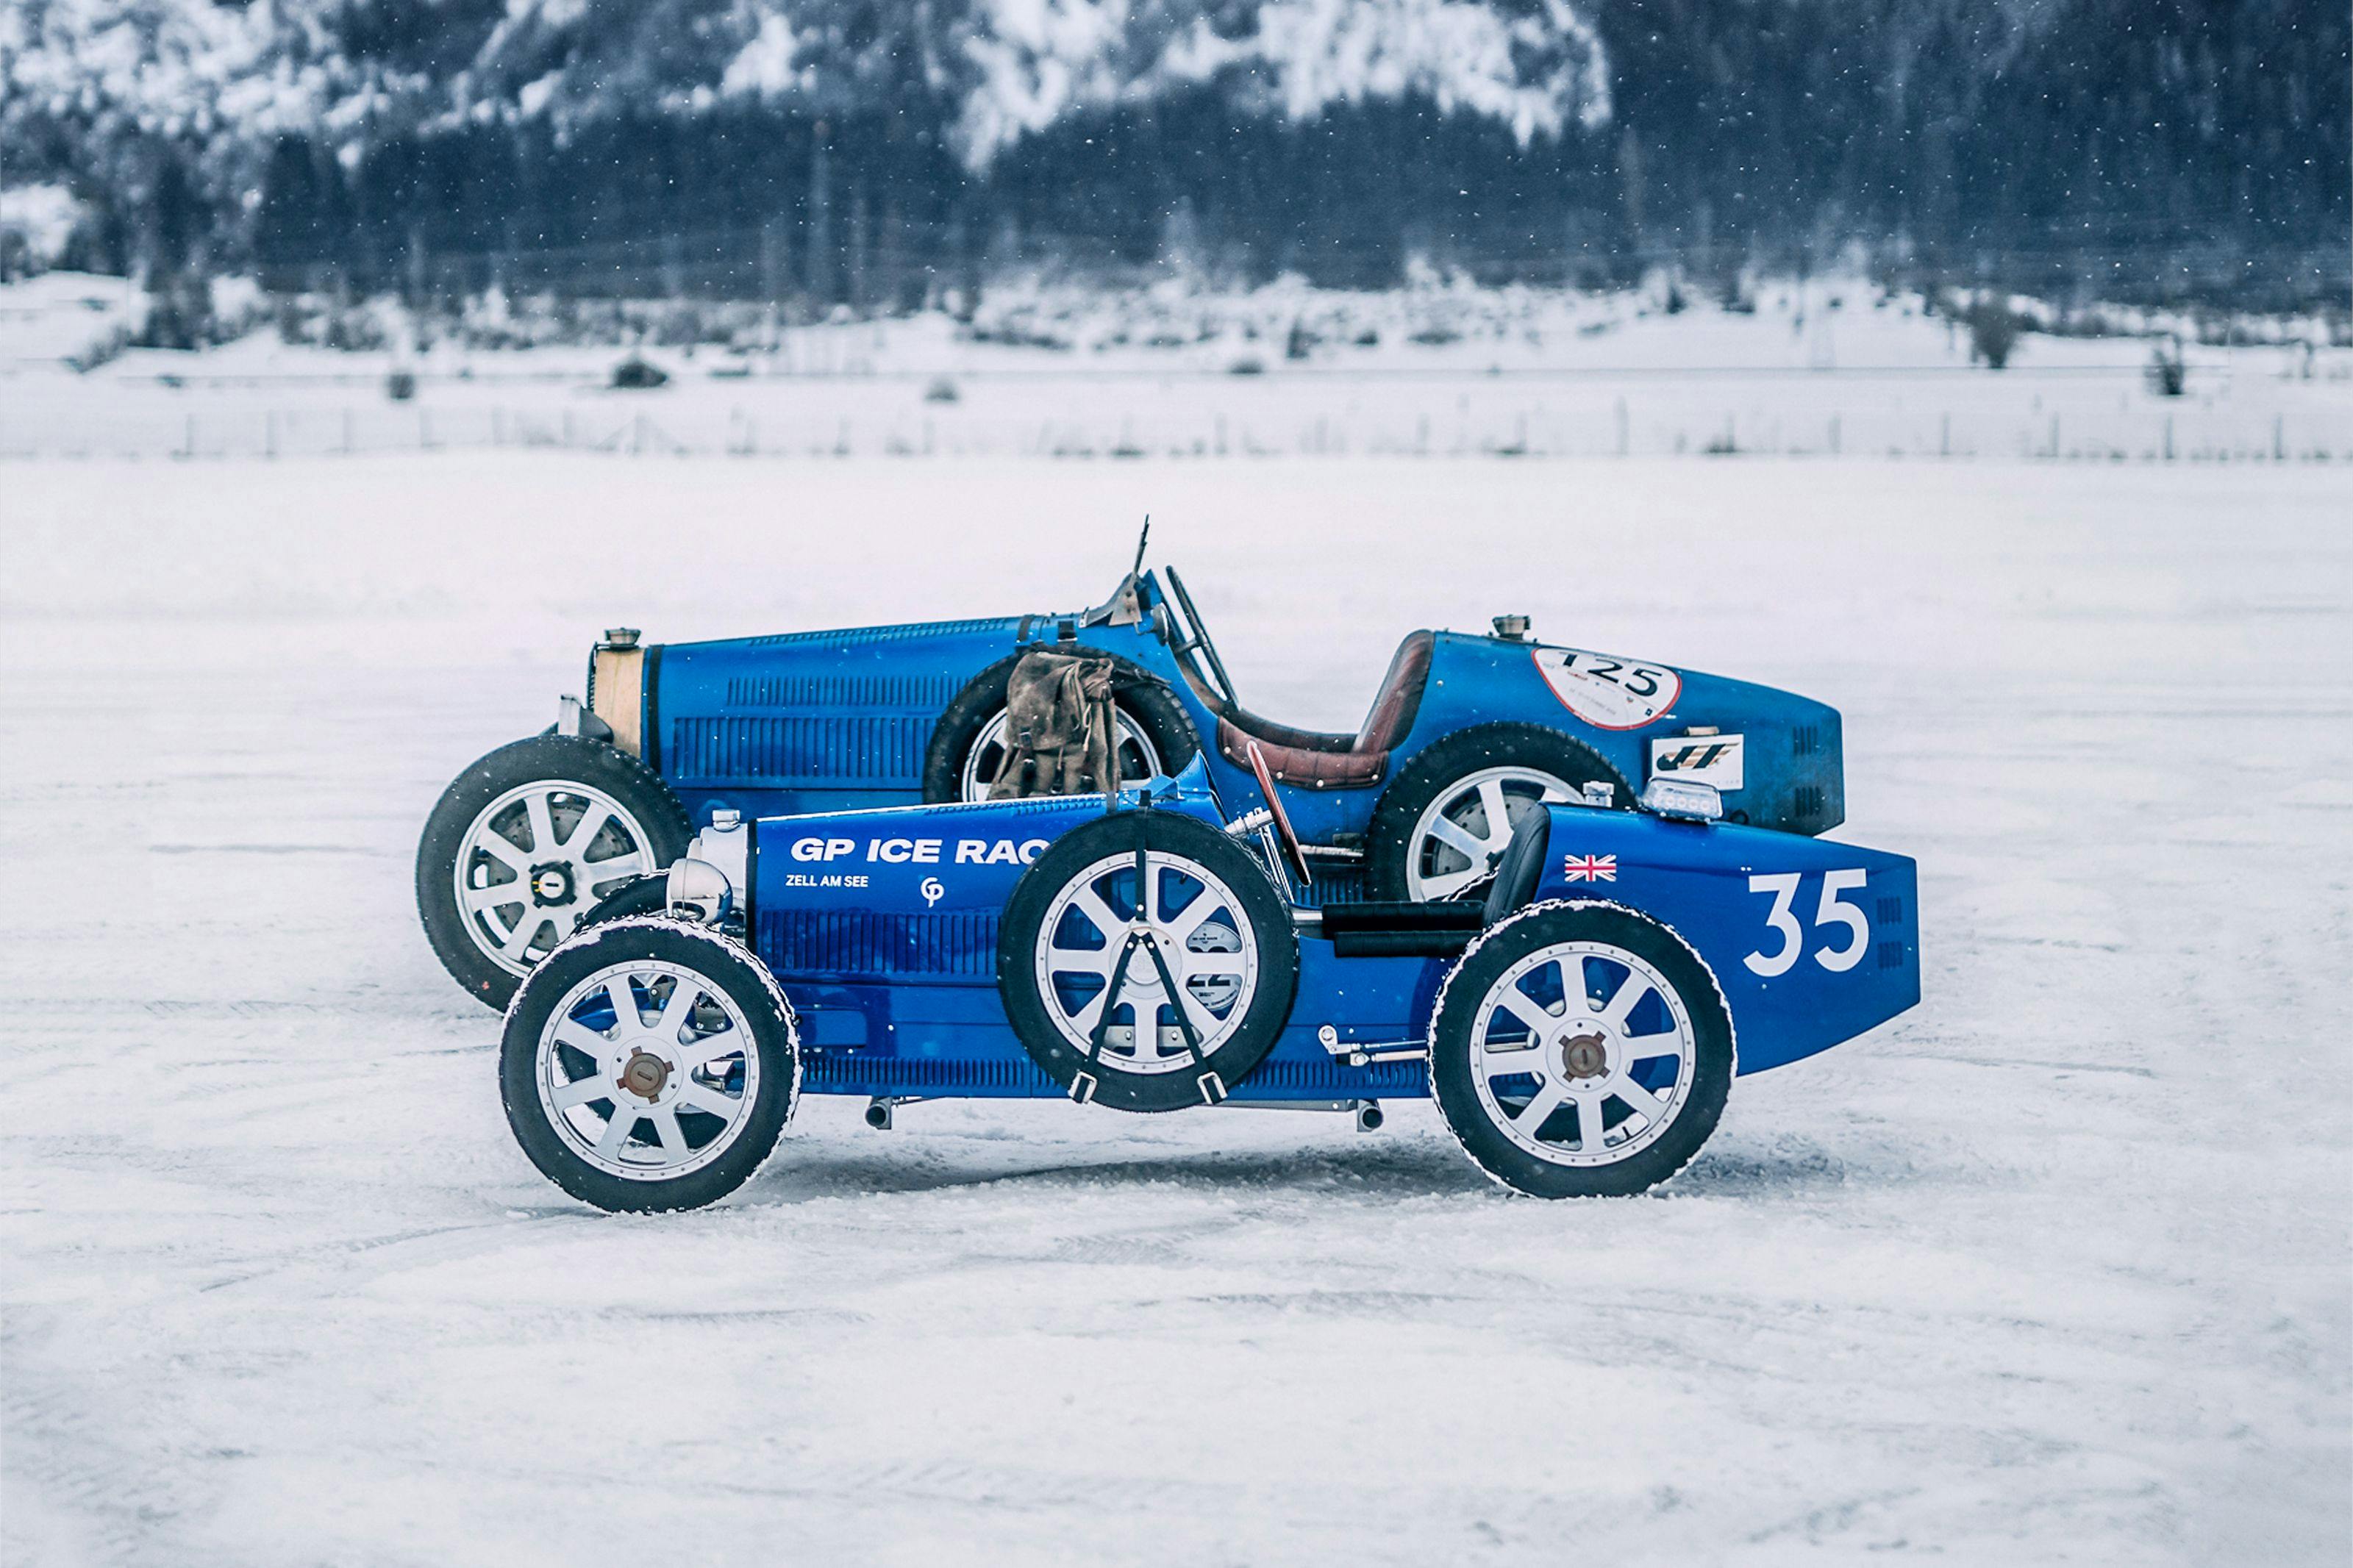 Bugatti kehrt über 60 Jahre nach seinem ersten Auftritt zurück zum GP Ice Race